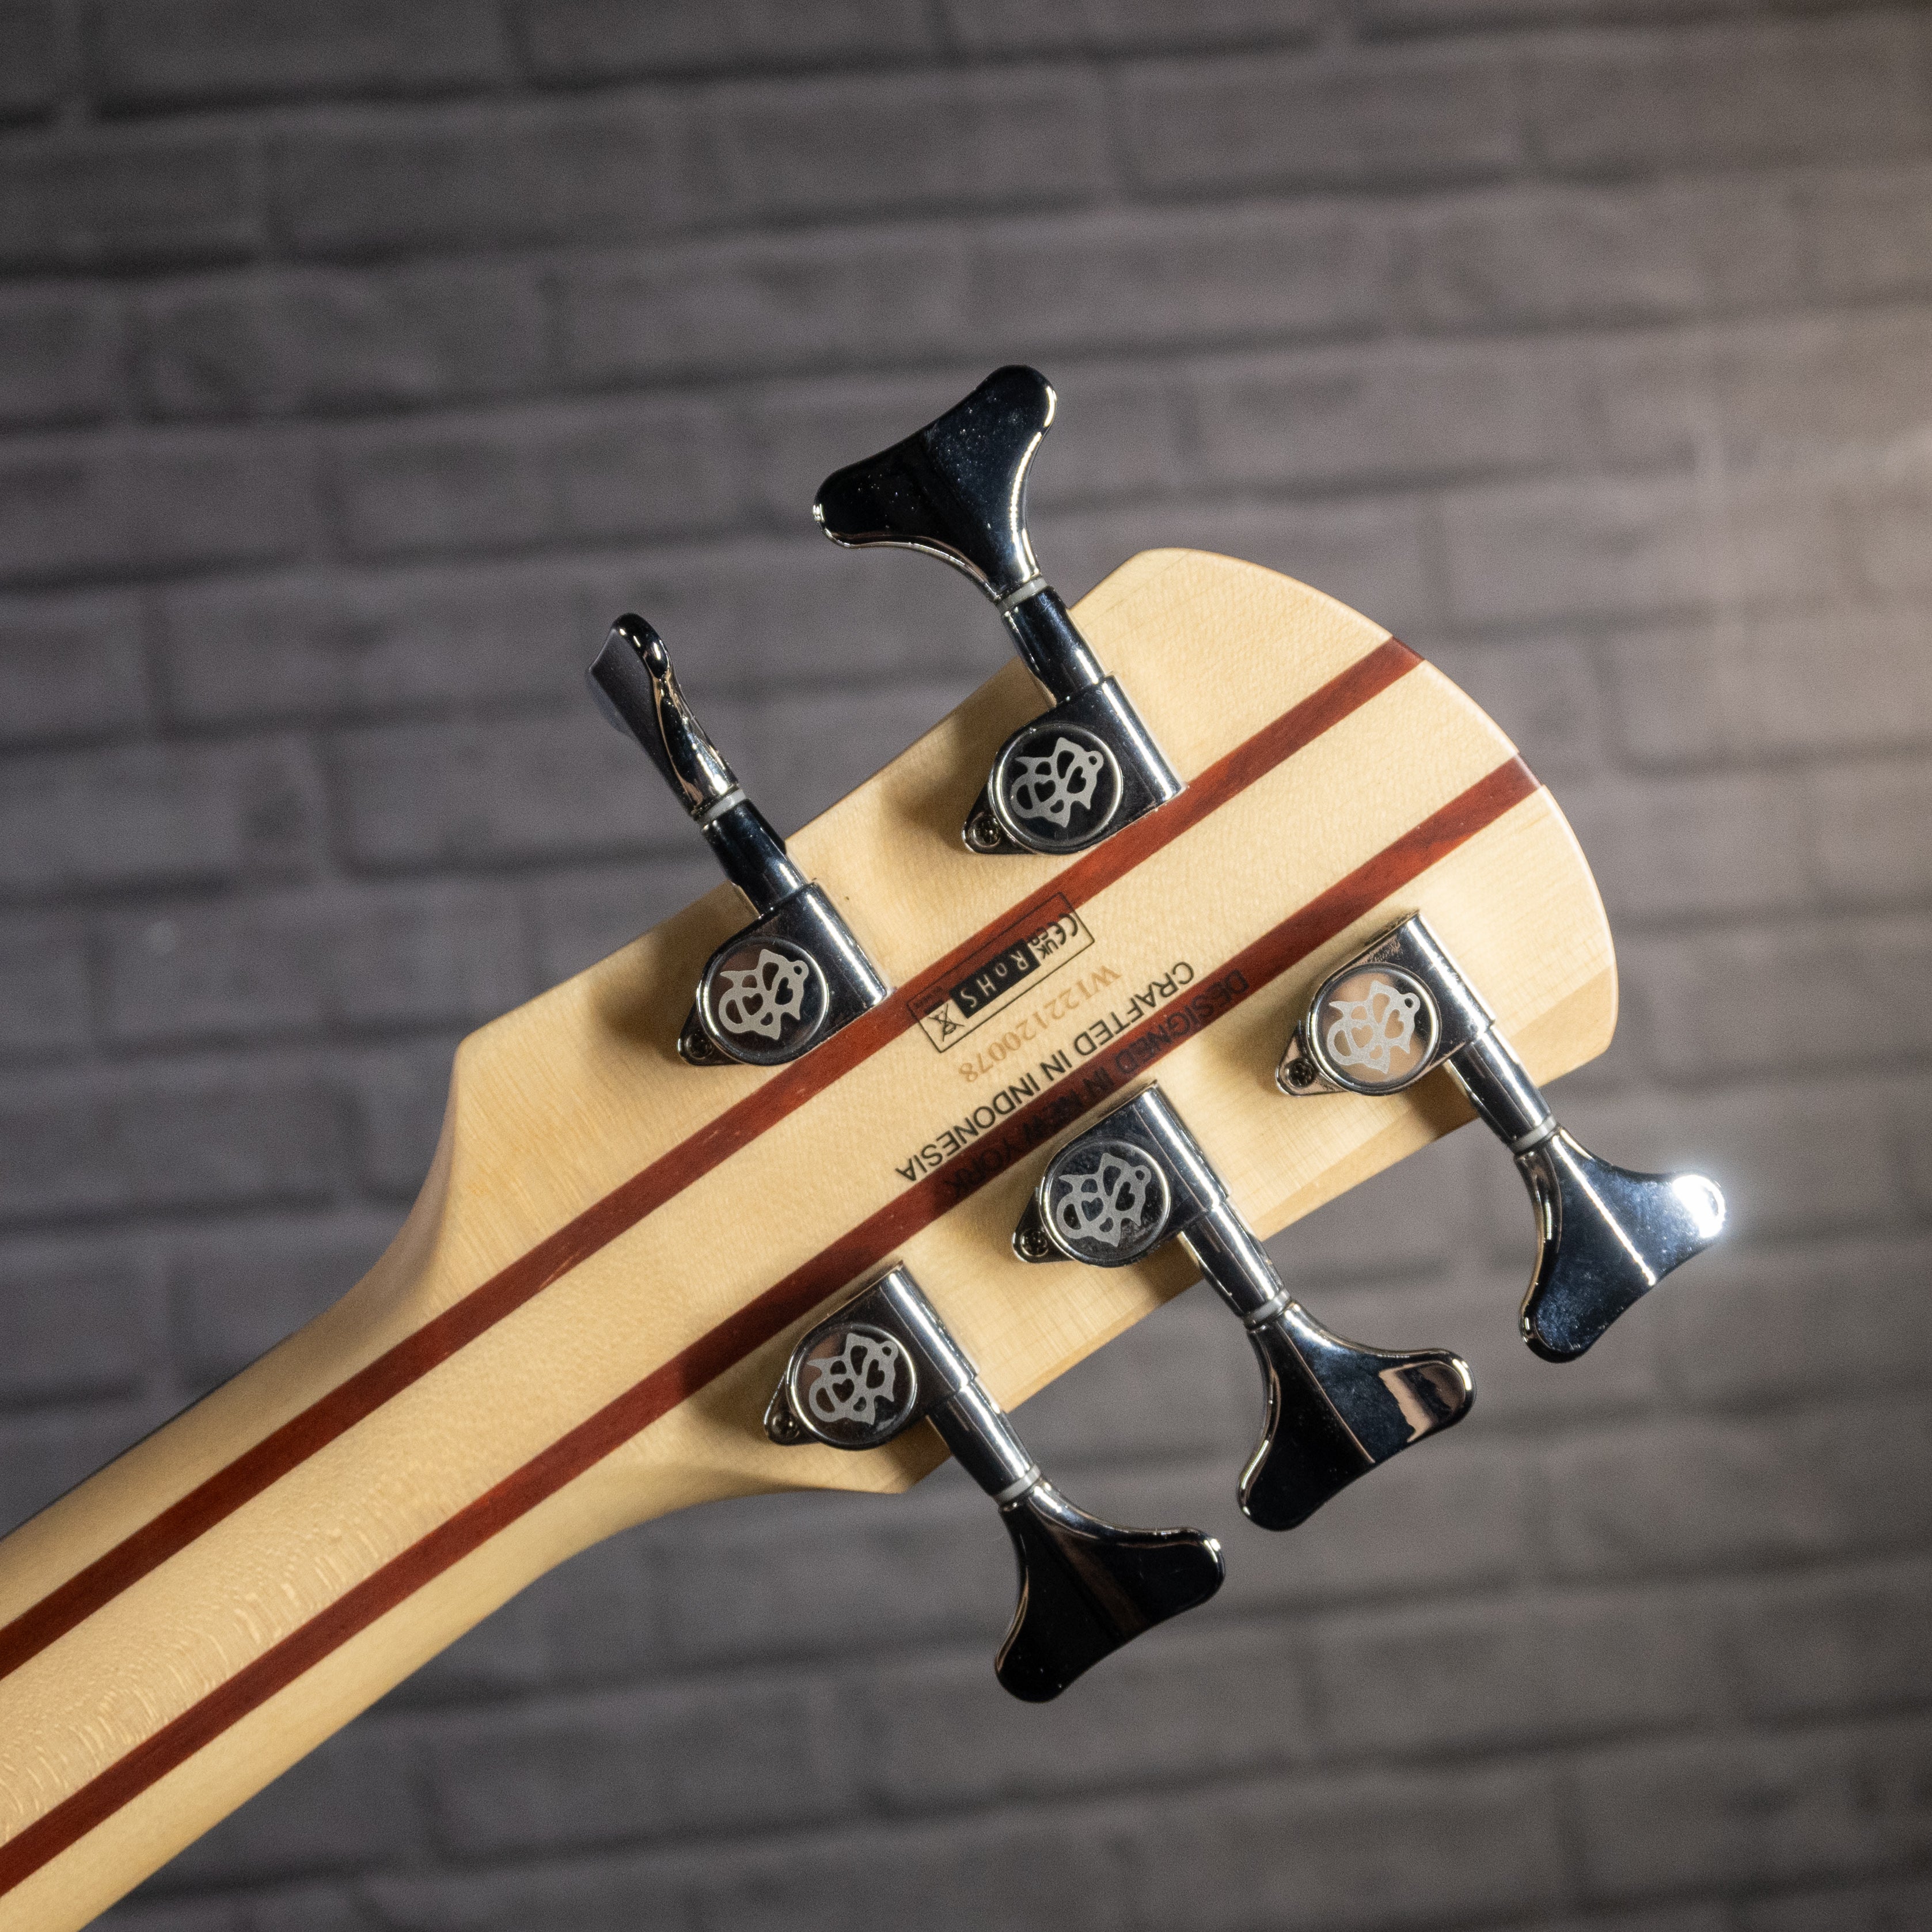 Spector Legend 5 Standard 5-String Bass Guitar (Blue Stain Gloss)